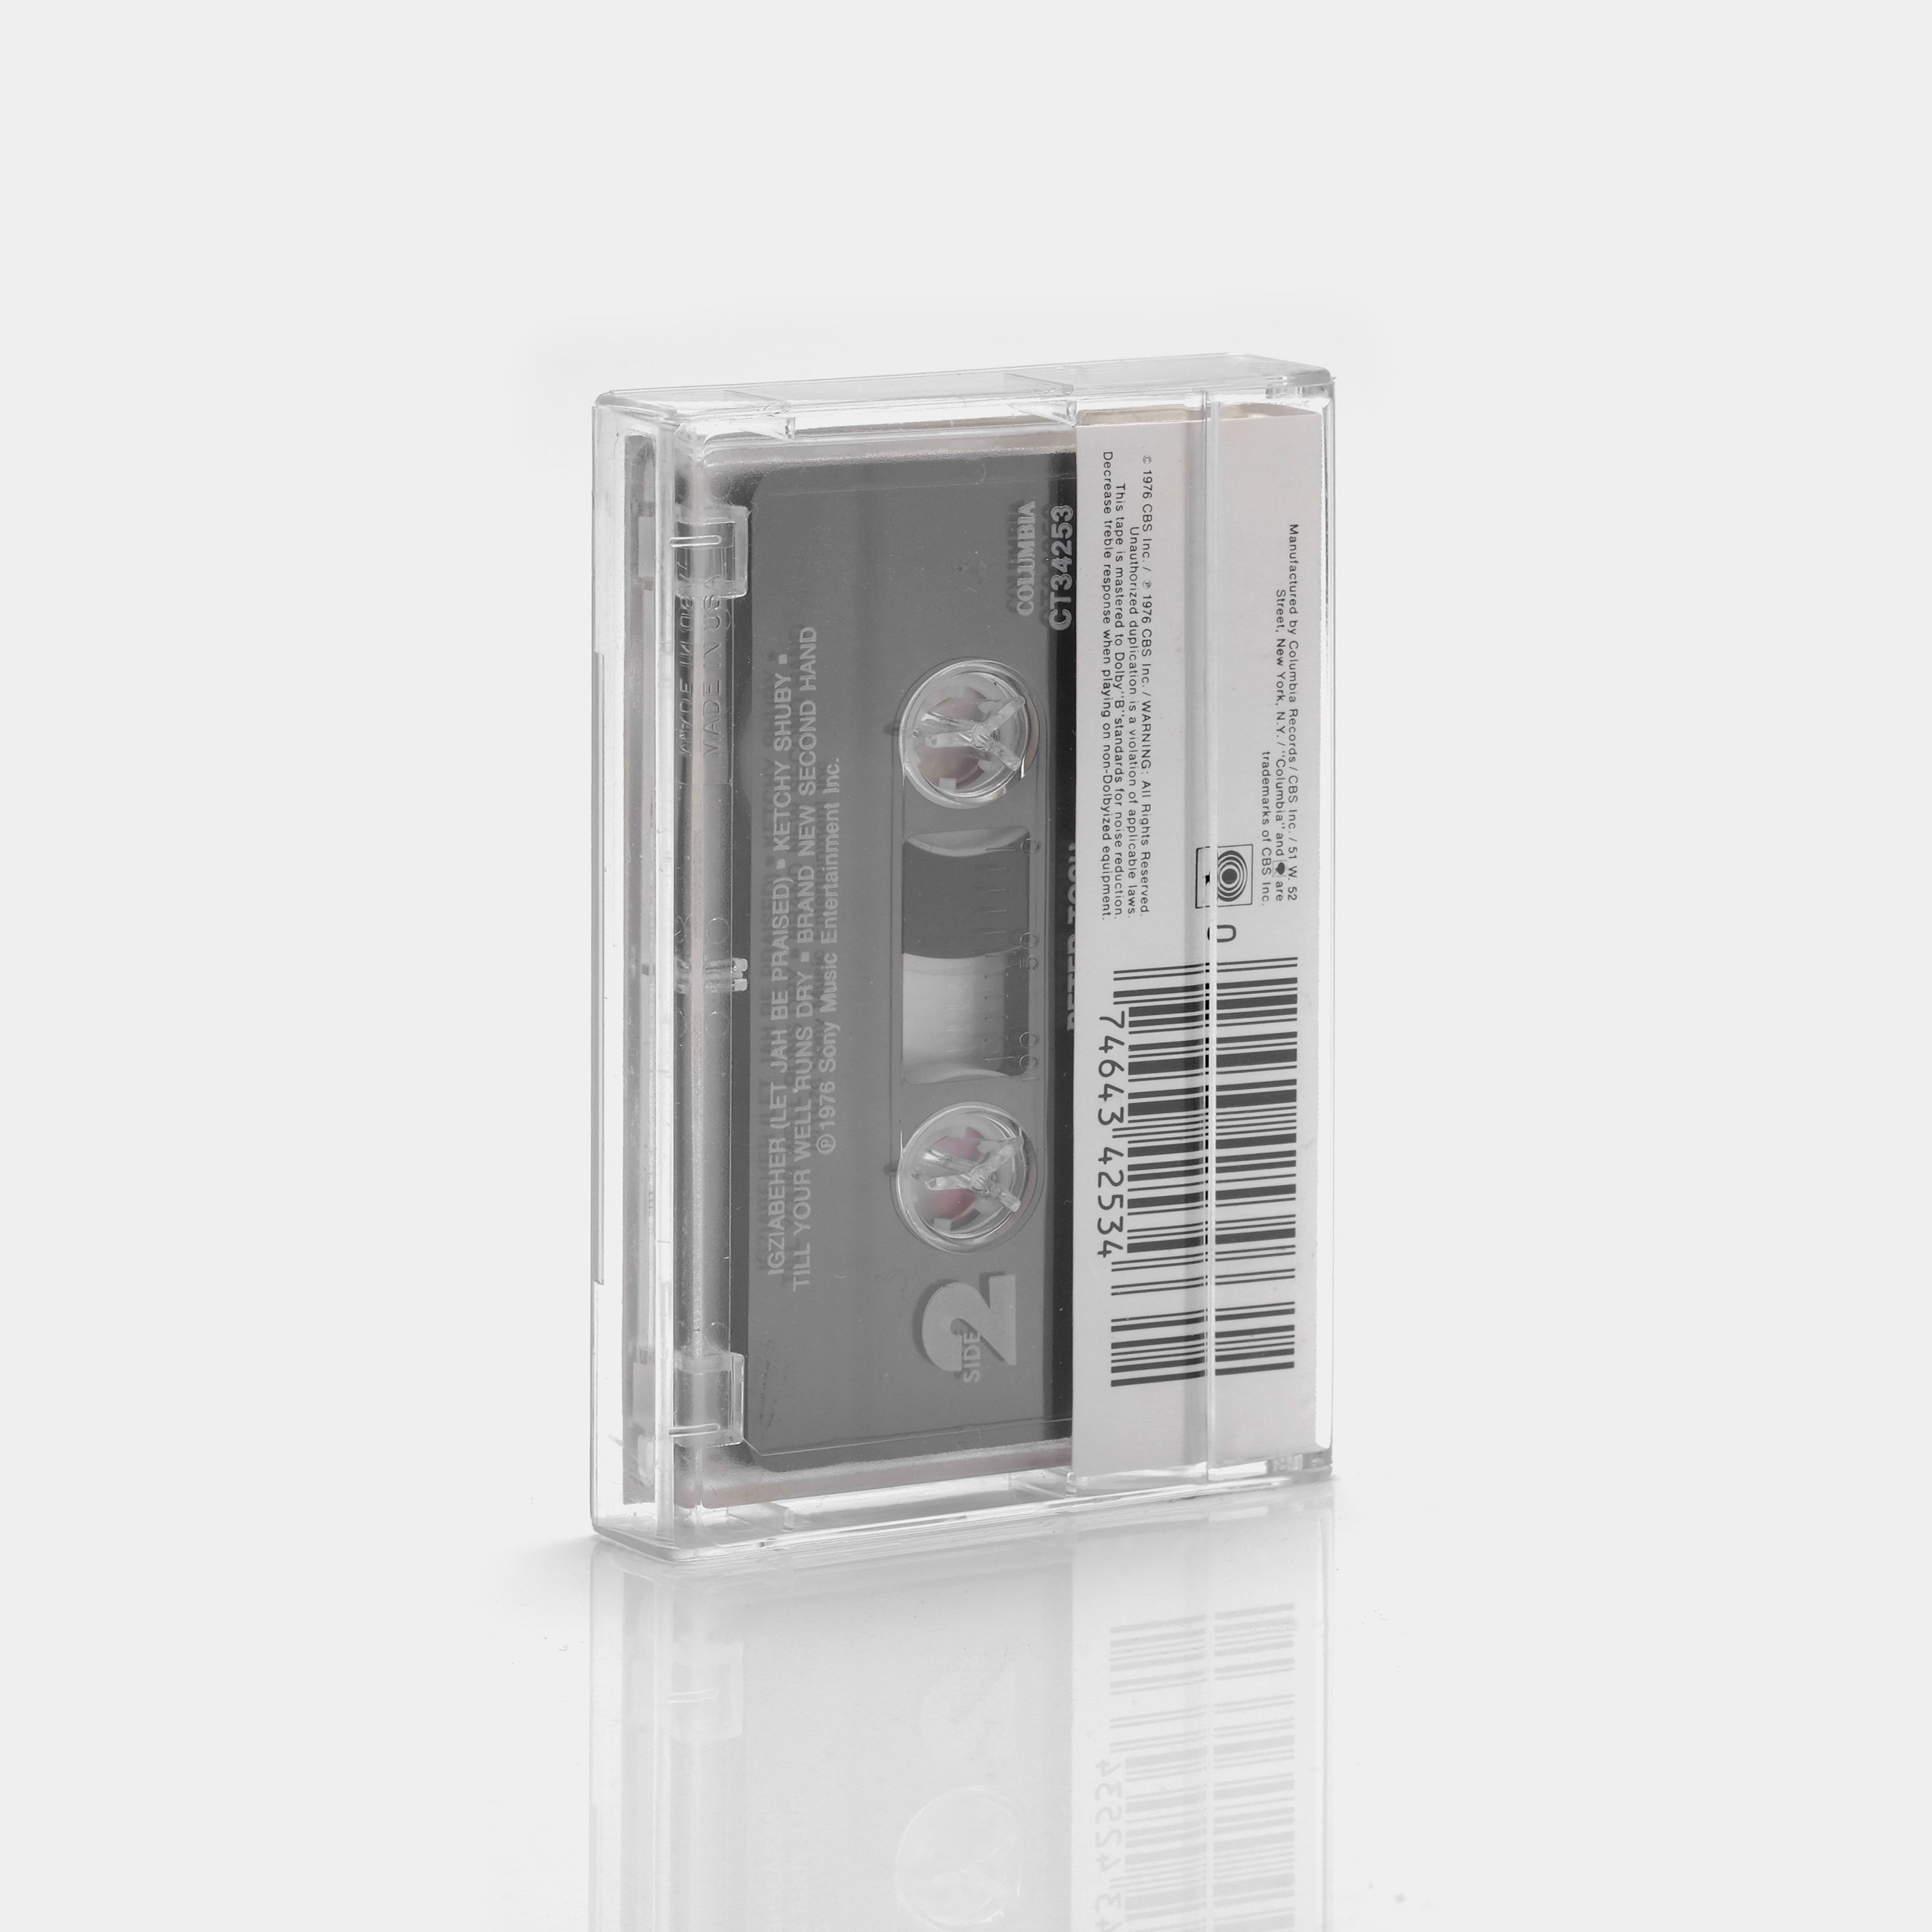 Peter Tosh - Legalize It Cassette Tape